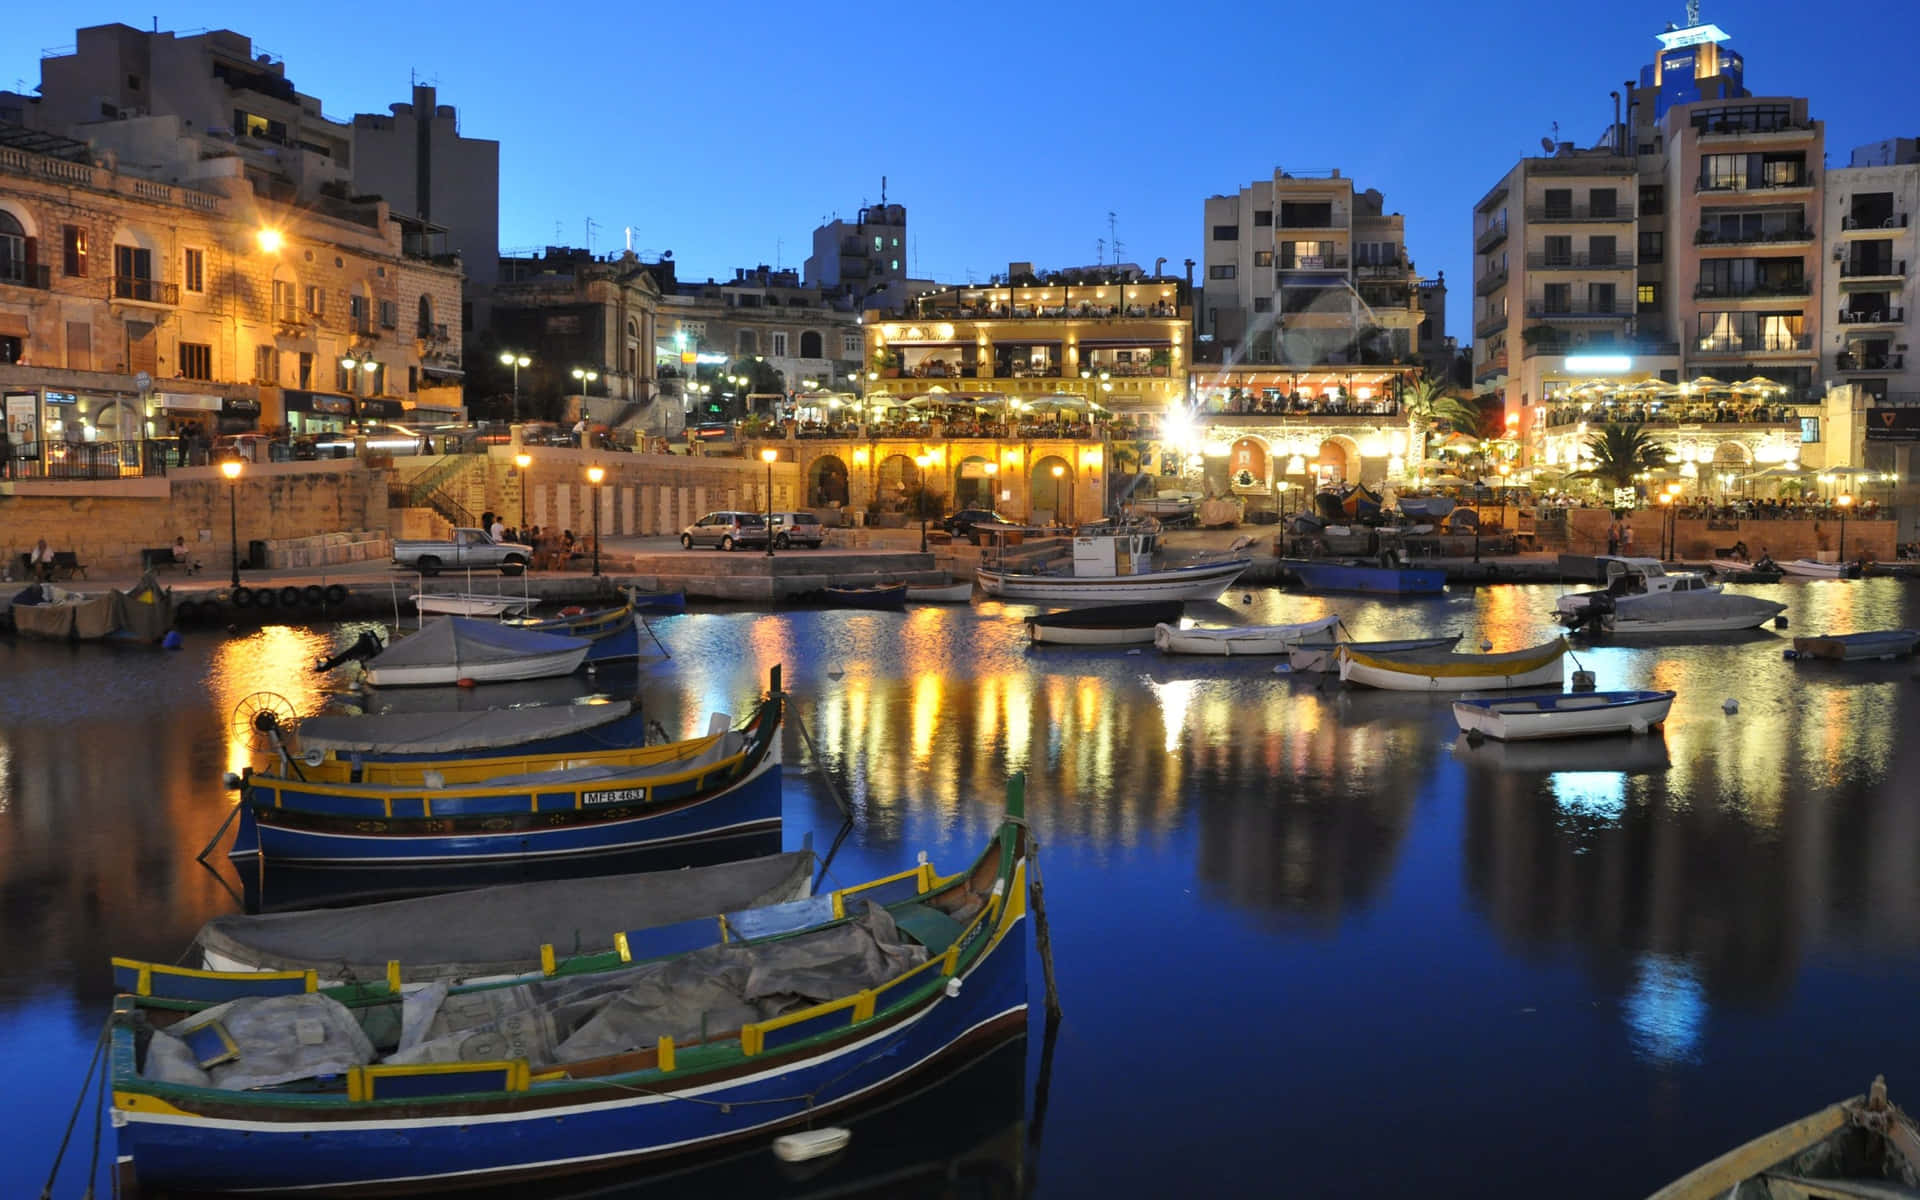 Vistaaerea Di Mdina, Malta